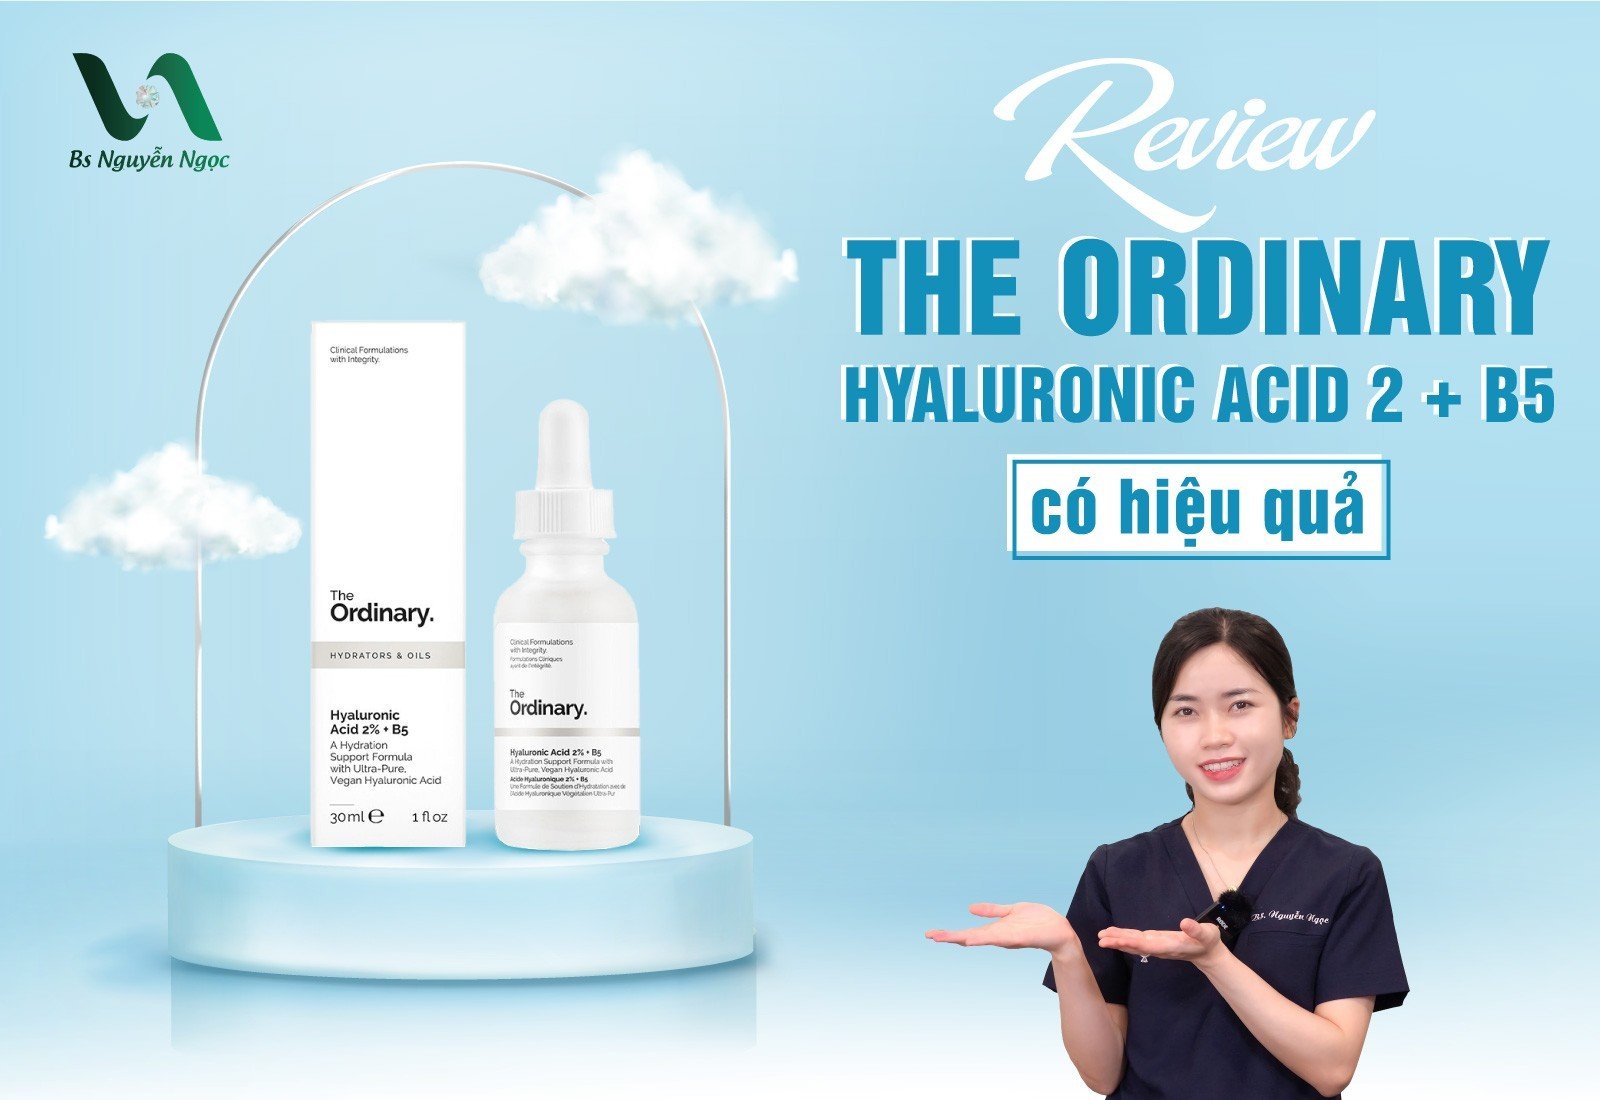 Review The Ordinary Hyaluronic Acid 2 + B5 có hiệu quả